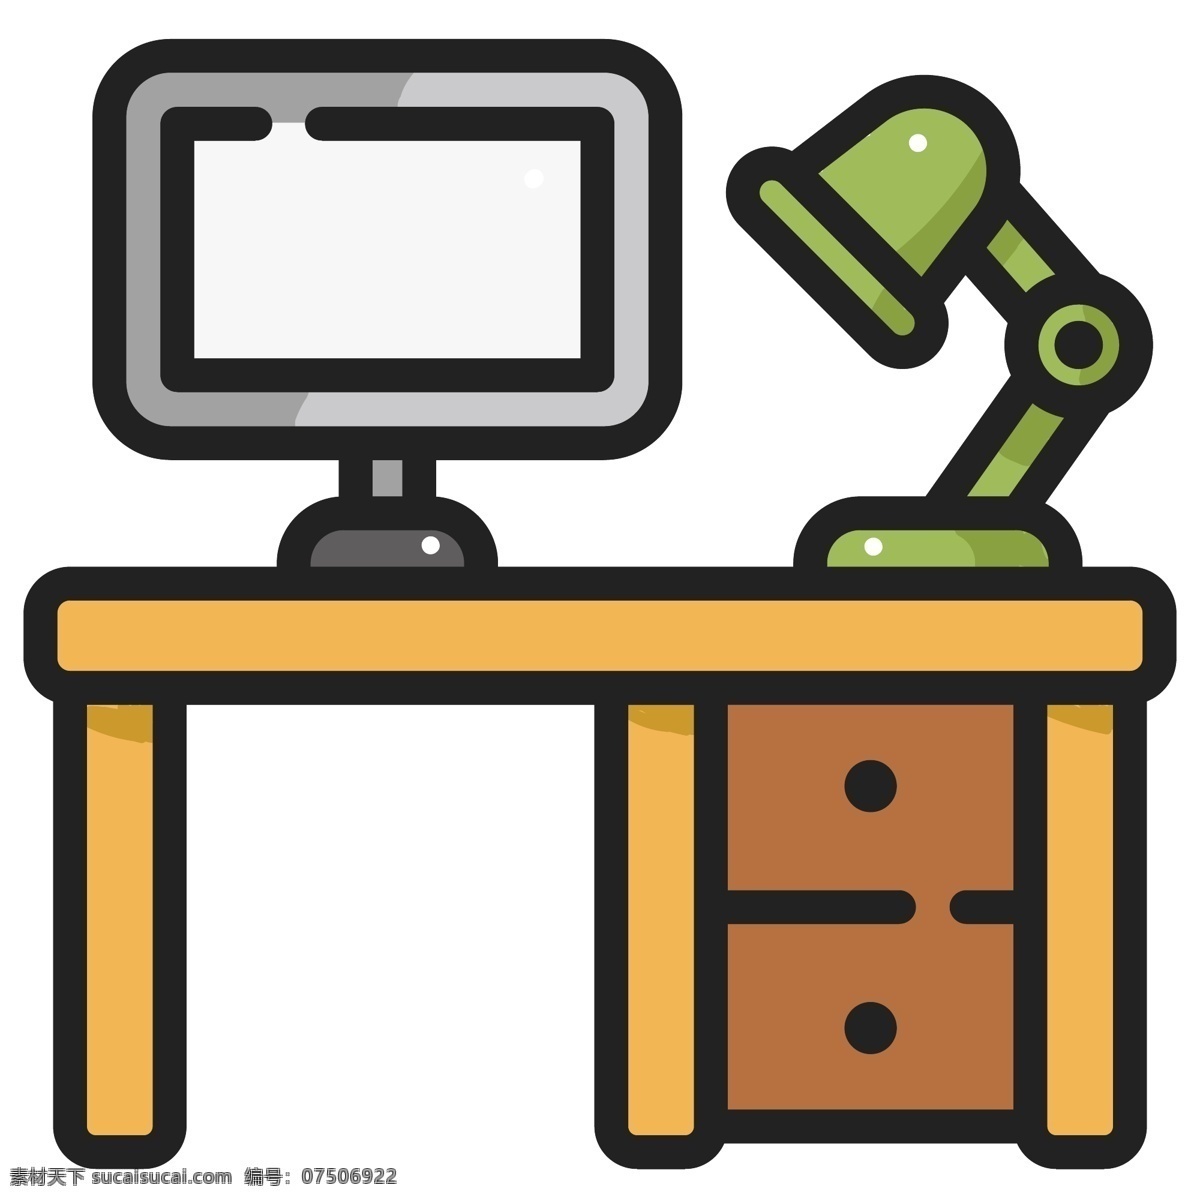 扁平化 办公桌 装饰 插画 木质桌子 扁平化办公桌 绿色台灯 电脑显示屏 灰色的电脑 办公室 办公用品